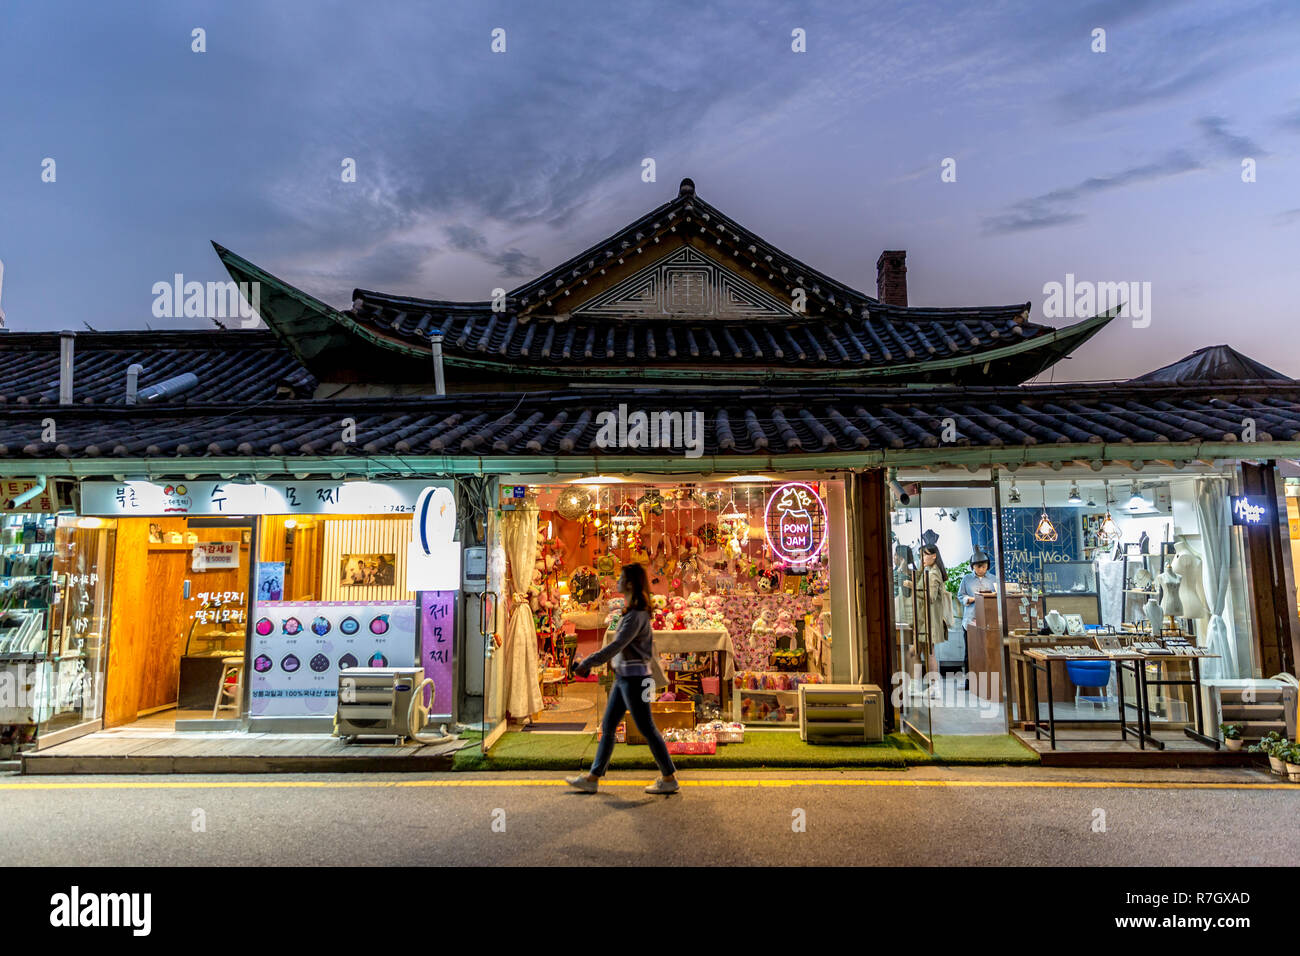 Seúl, Corea del Sur - 4 Sep 2018 - Una joven caminando delante de un colorido brillante tienda de souvenirs en el centro de Seúl, en una tarde de sol Foto de stock